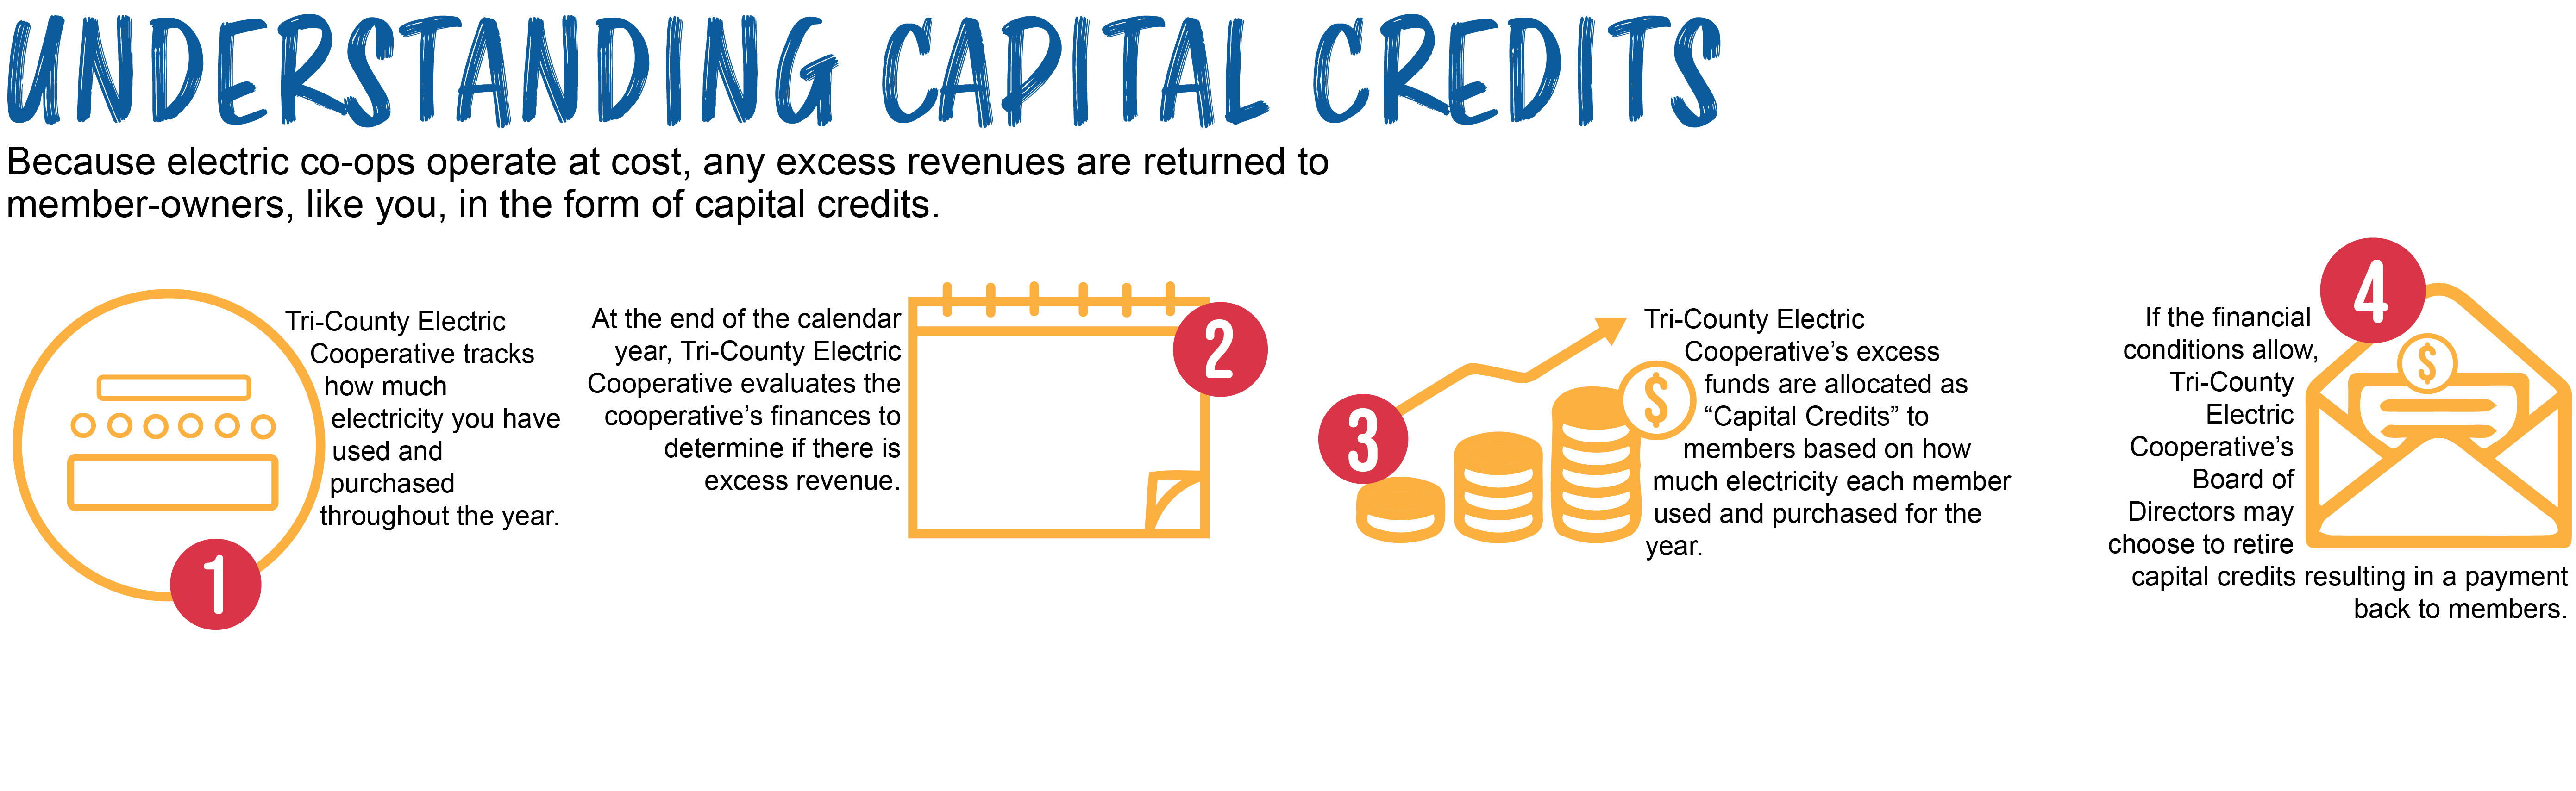 Capital Credits diagram